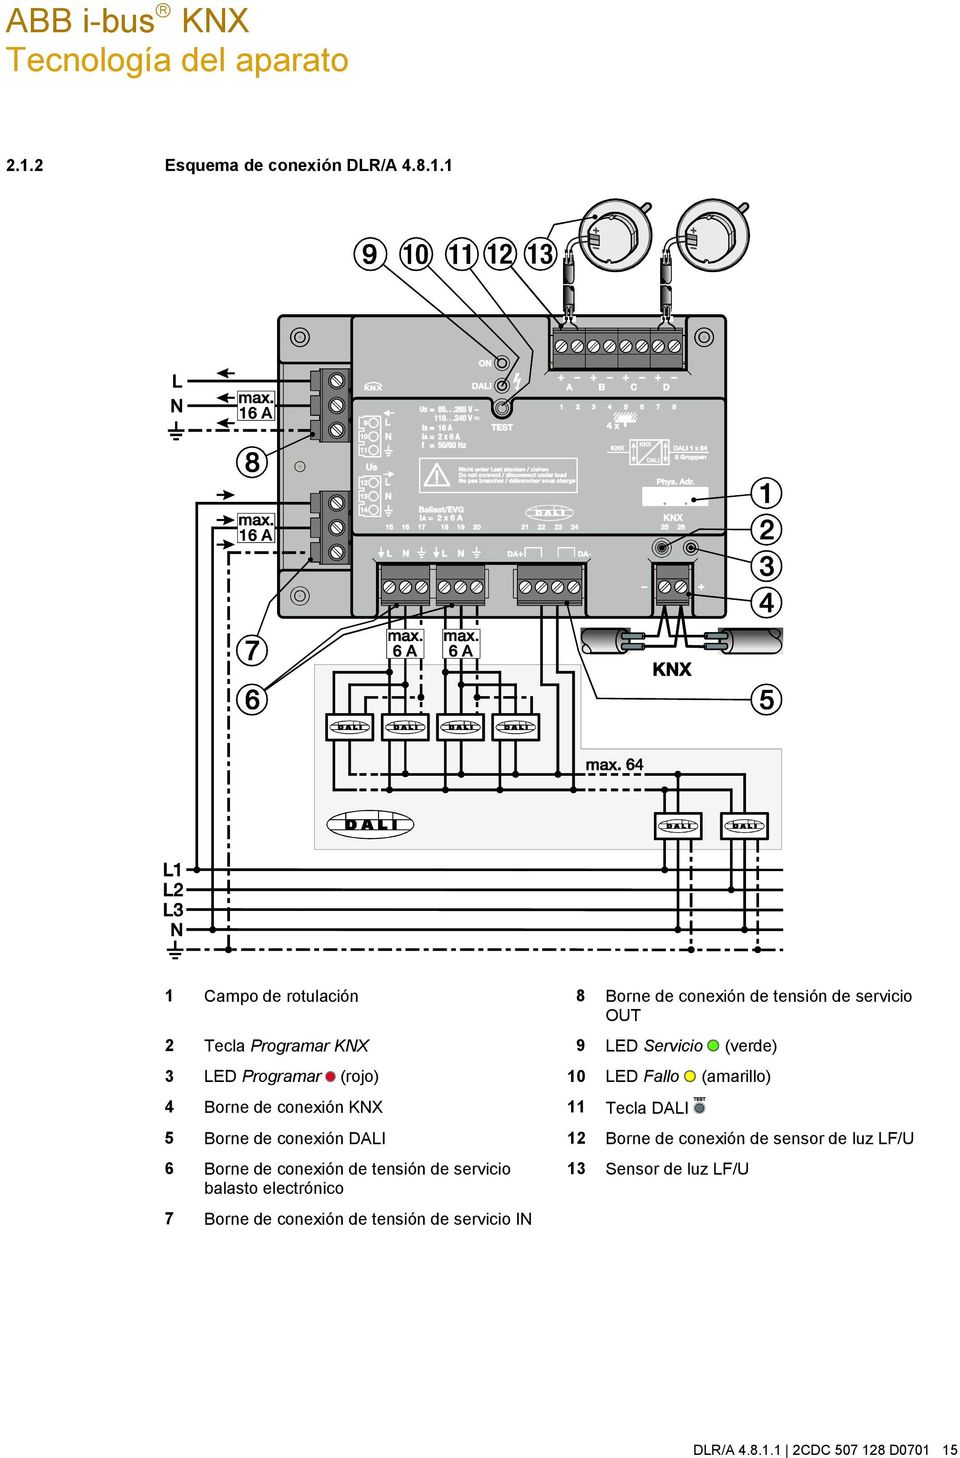 1 1 Campo de rotulación 8 Borne de conexión de tensión de servicio OUT 2 Tecla Programar KNX 9 LED Servicio (verde) 3 LED